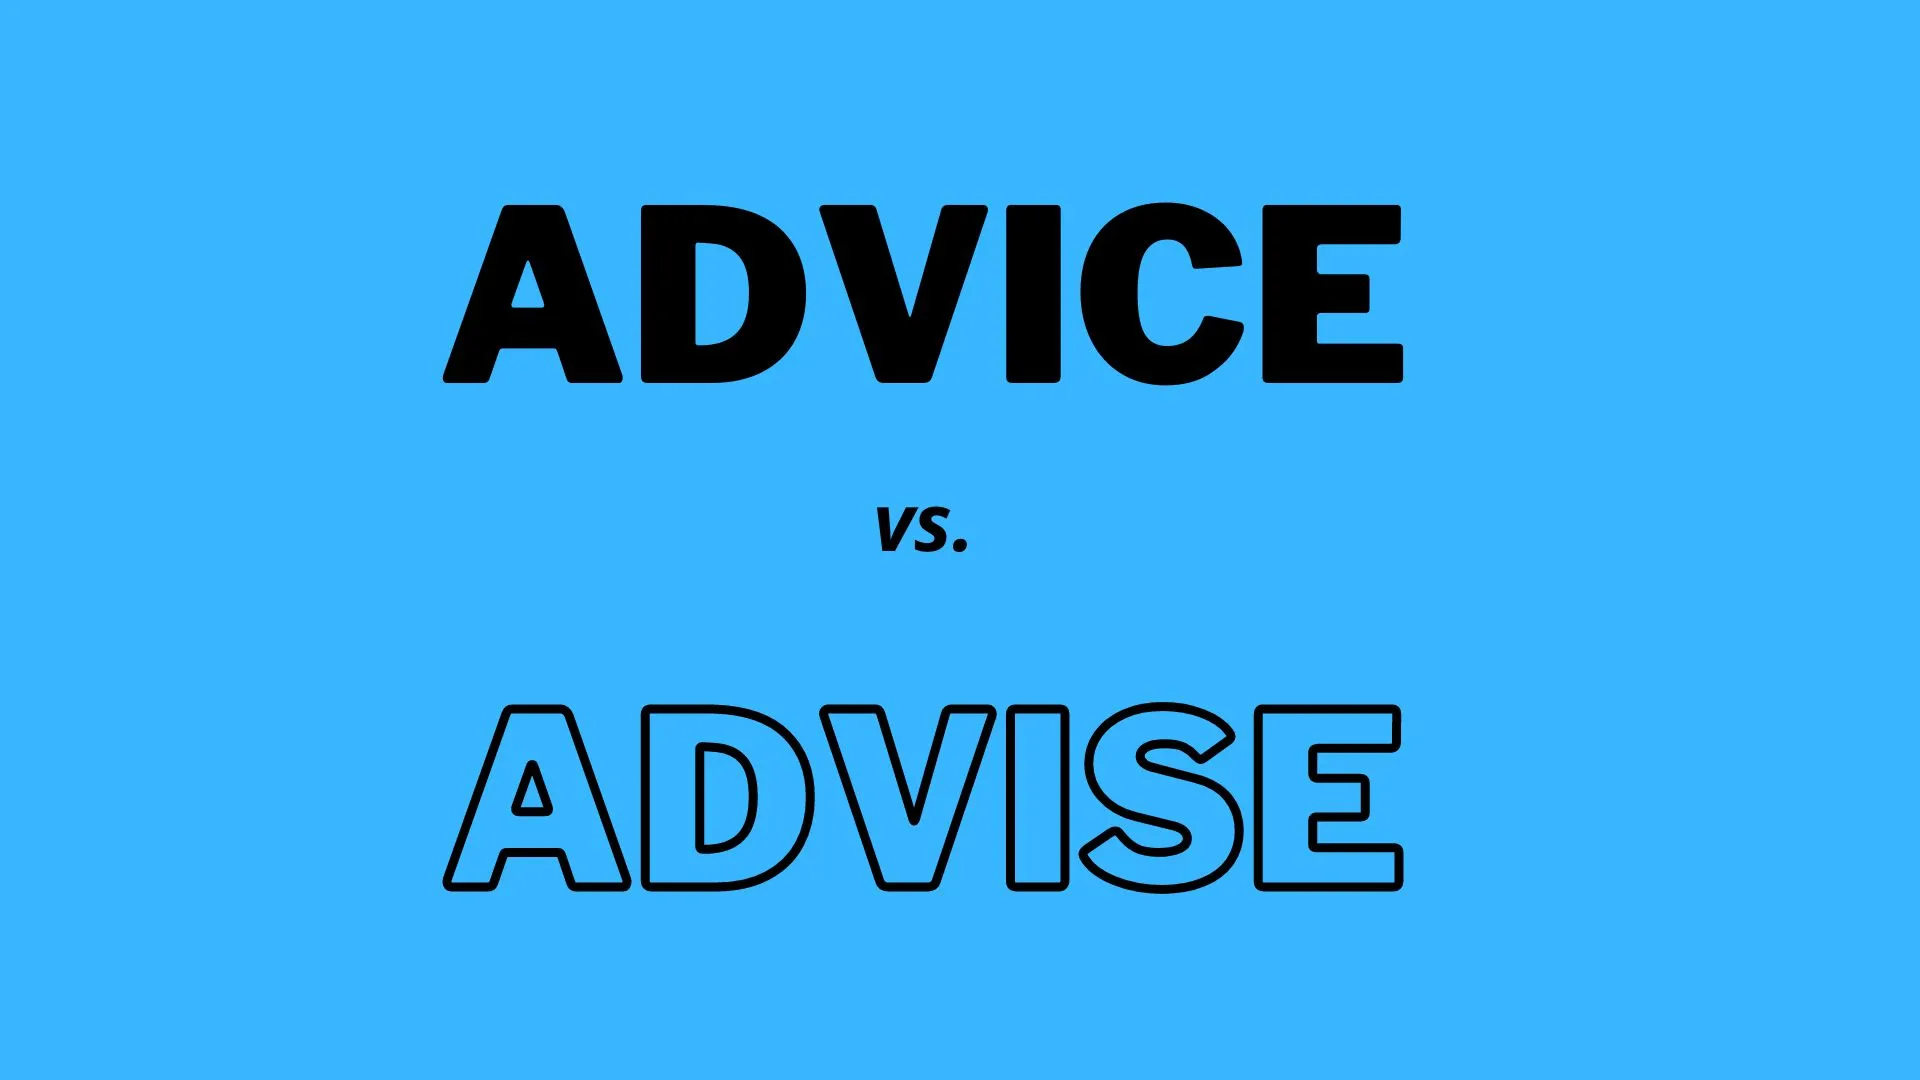 "Advice" é um substantivo que significa orientação ou recomendações, enquanto "advise" é um verbo que significa dar conselho.